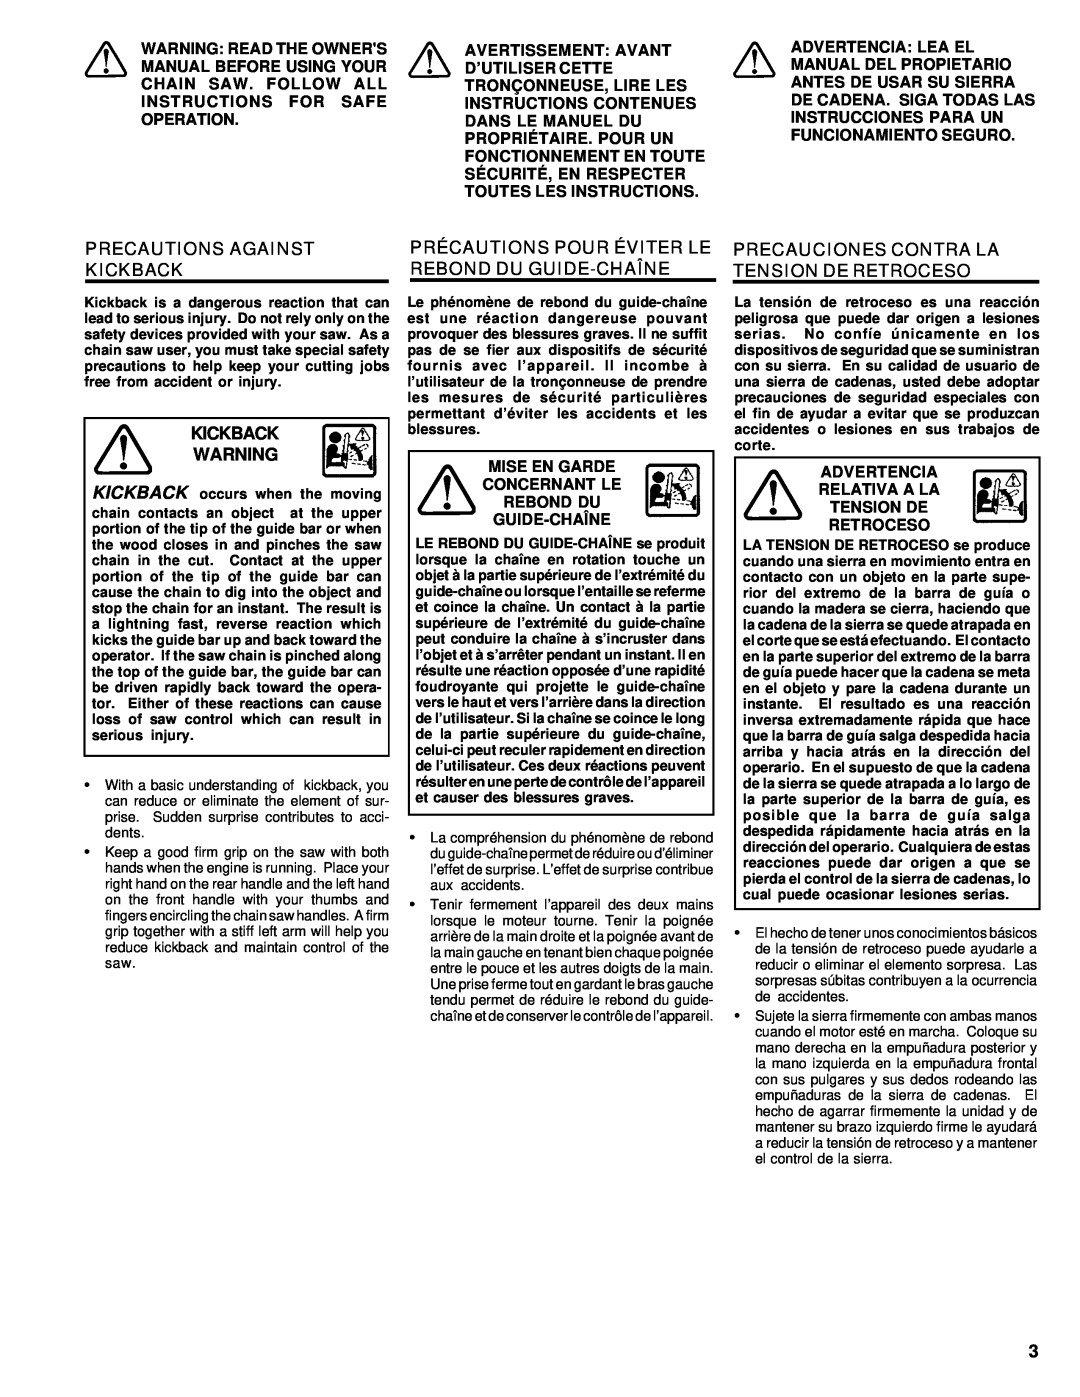 Homelite UT74020 manual Precautions Against Kickback, Précautions Pour Éviter Le Rebond Du Guide-Chaîne 